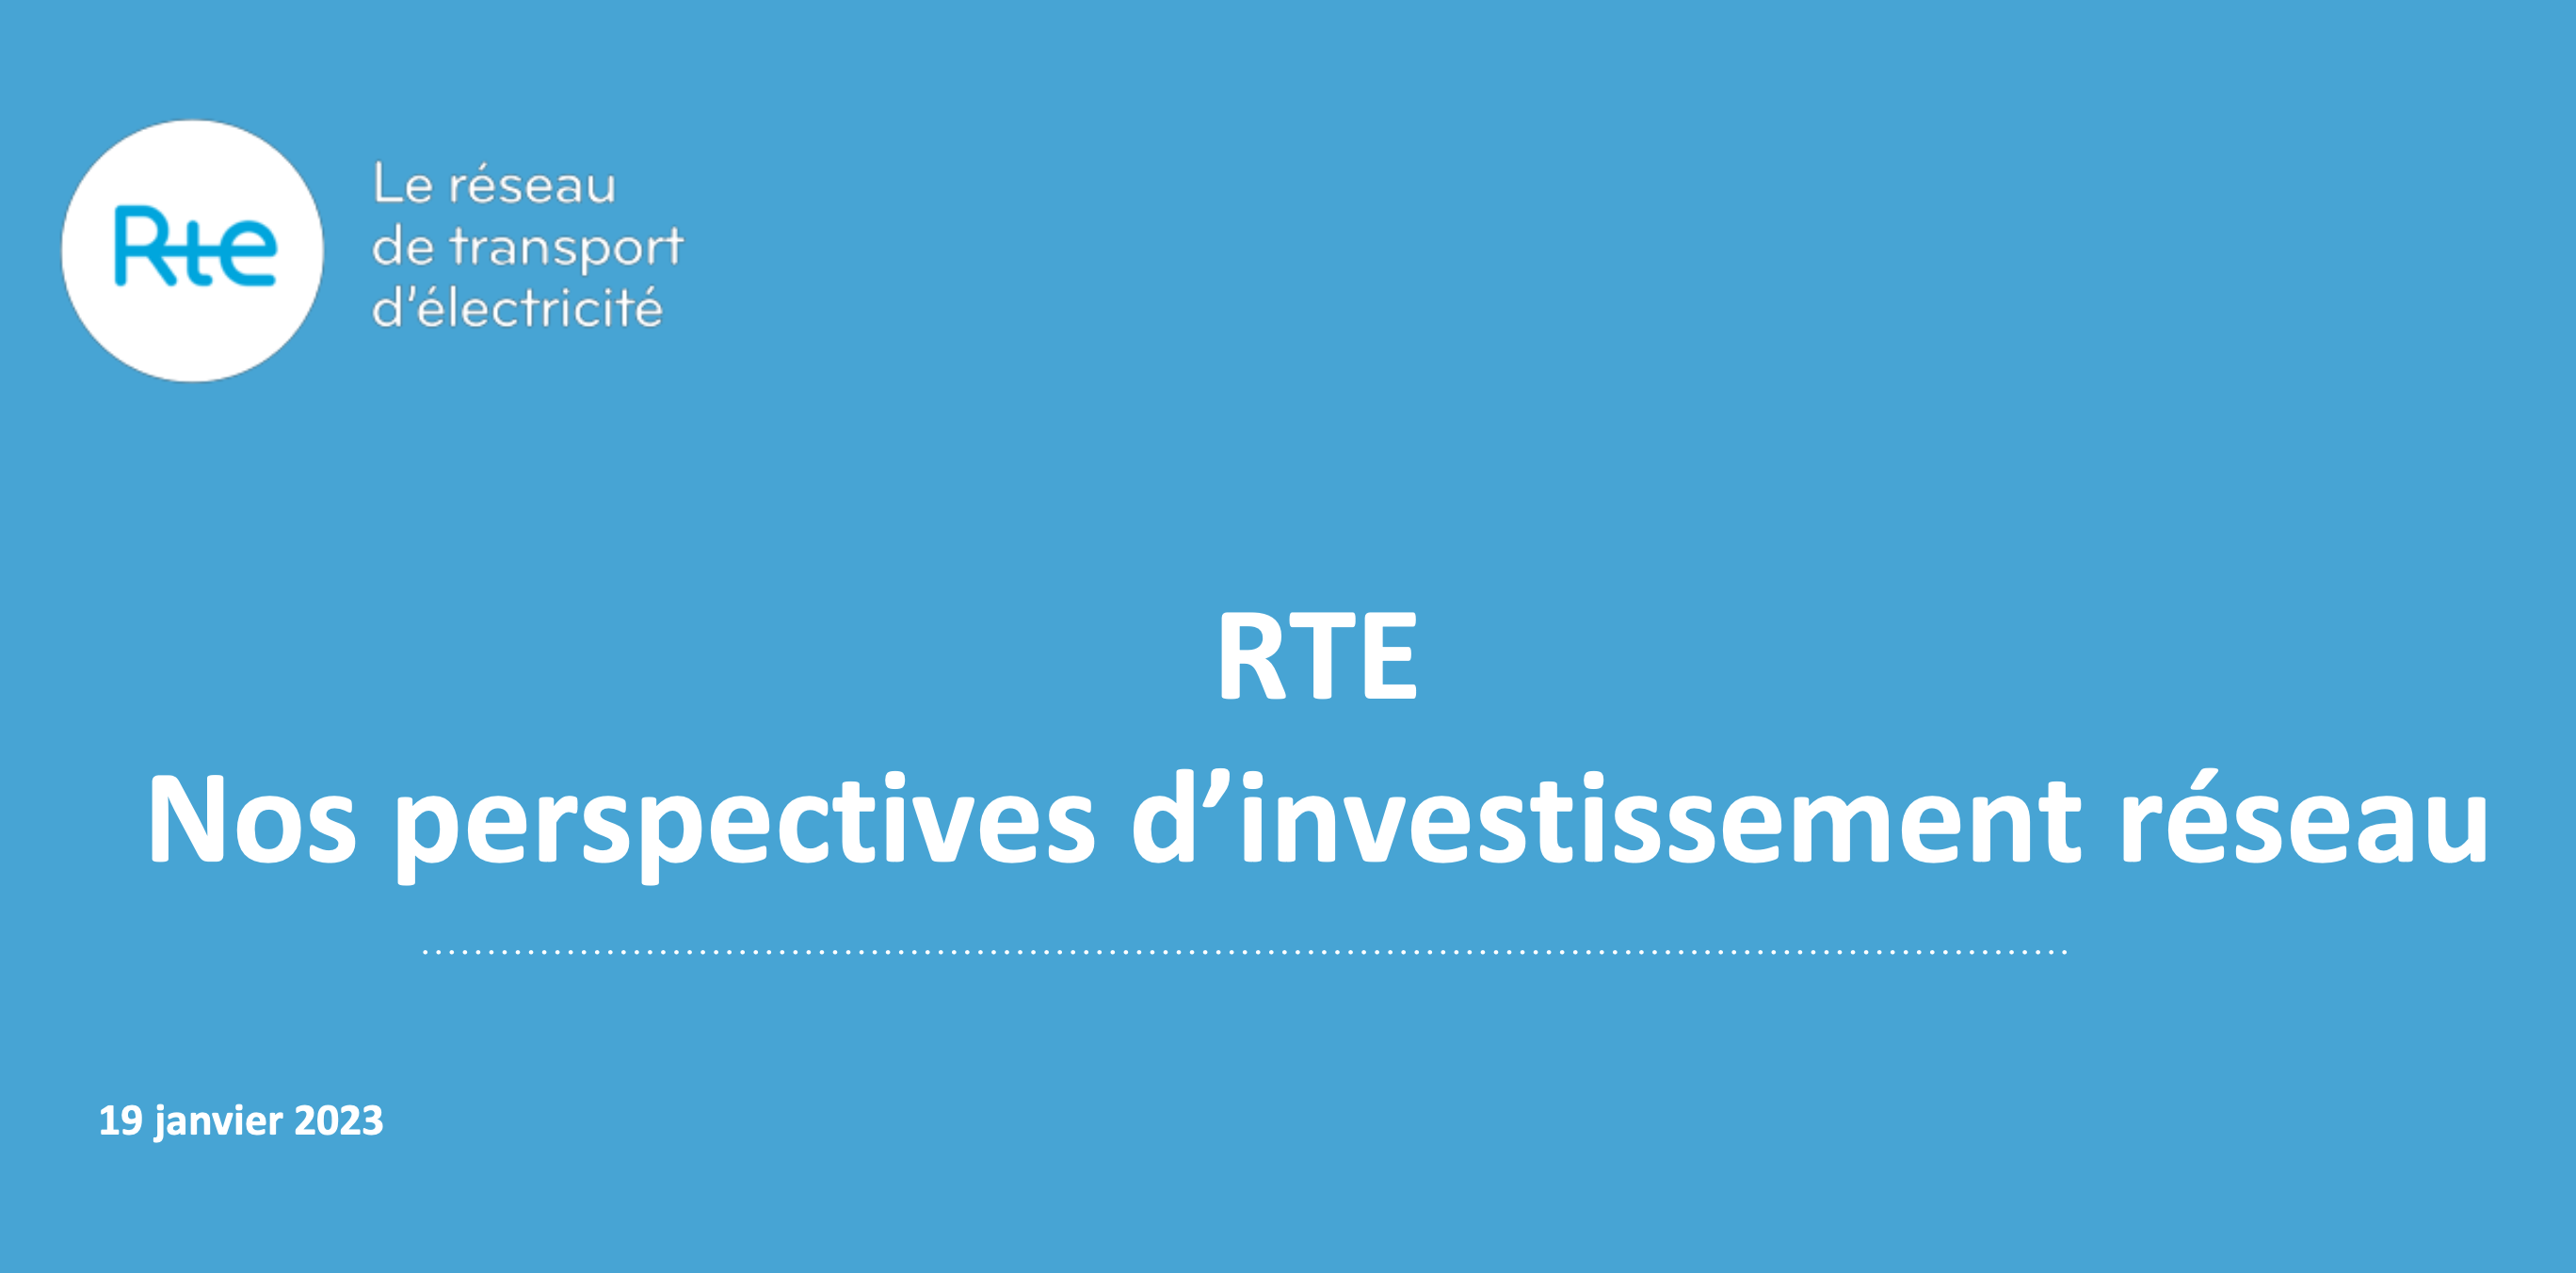 RTE - Les perspectives d’investissement réseau